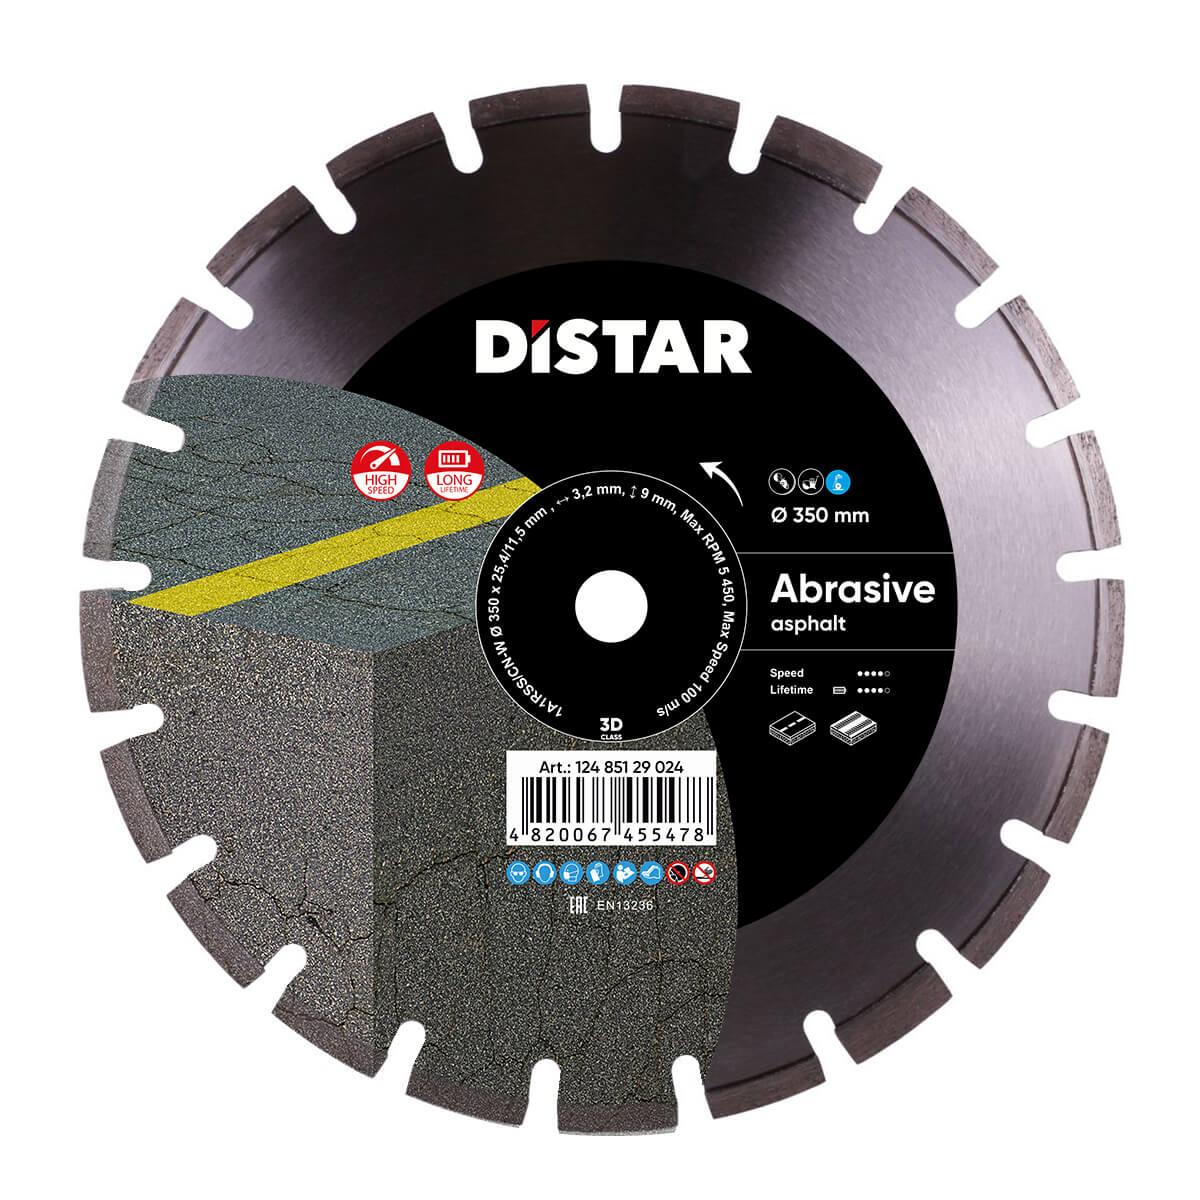 Диск алмазний по абразиву Distar 1A1RSS/C1-W Bestseller Abrasive 350x25.4x3.2 мм (12485129024)